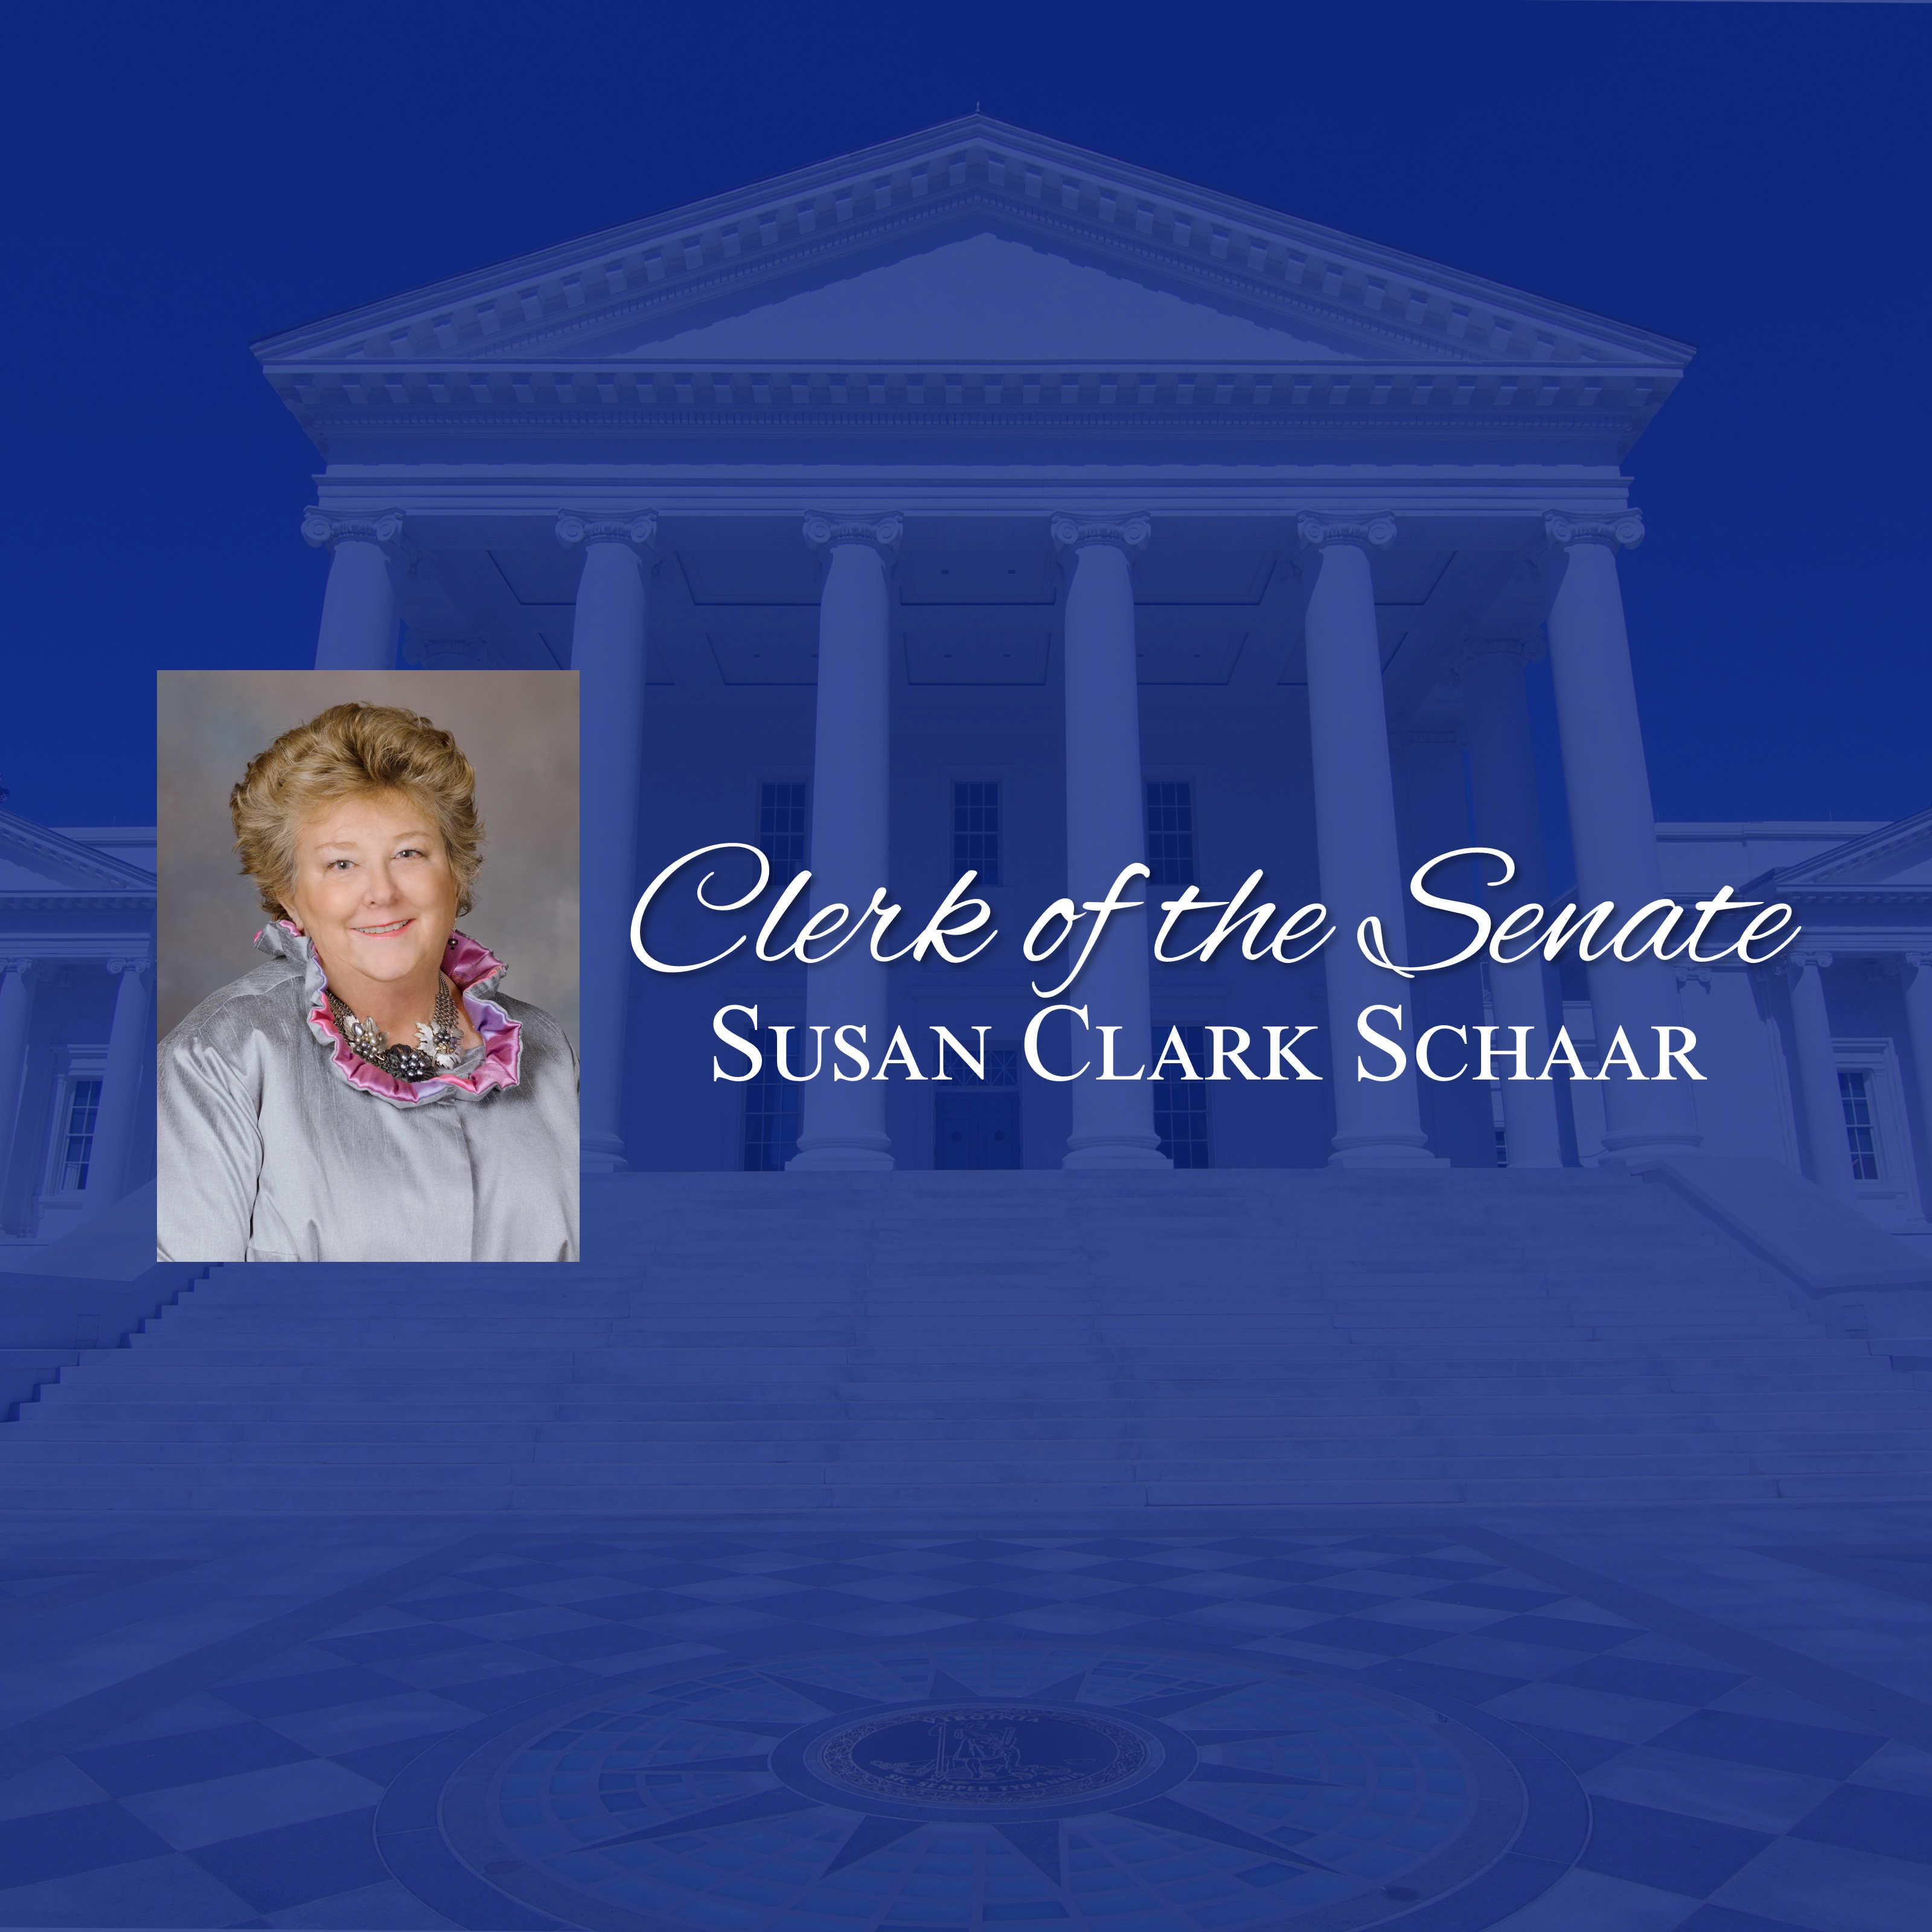 The Honorable Susan Clark Schaar, Clerk of the Senate 